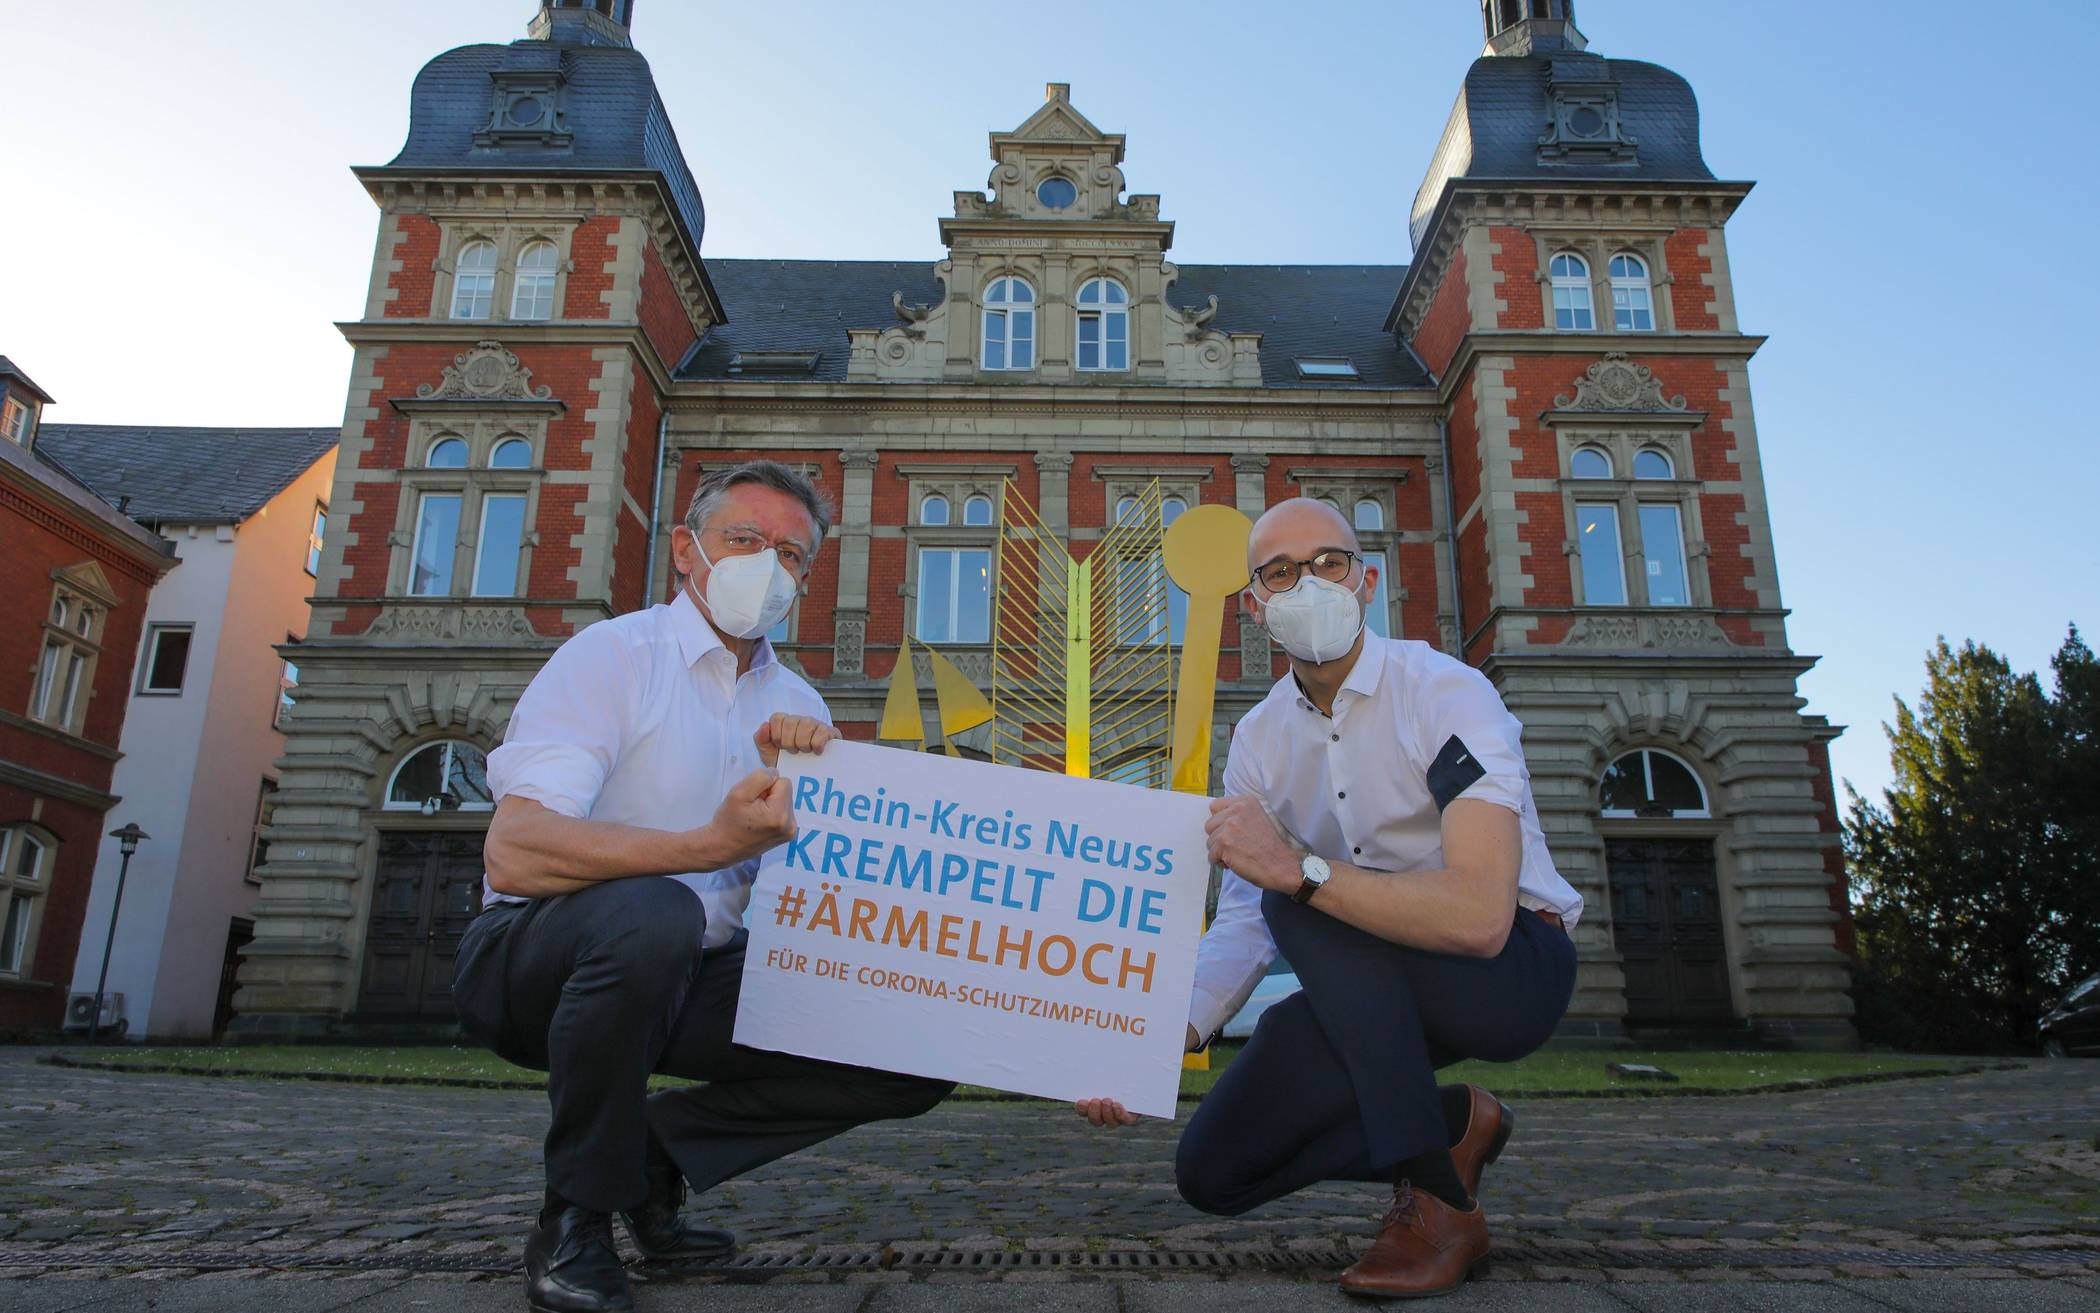  Landrat Hans-Jürgen Petrauschke (links) und Kreis-Pressesprecher Benjamin Josephs stellen die Impfkampagne „Rhein-Kreis Neuss krempelt die #ärmelhoch“ vor. 